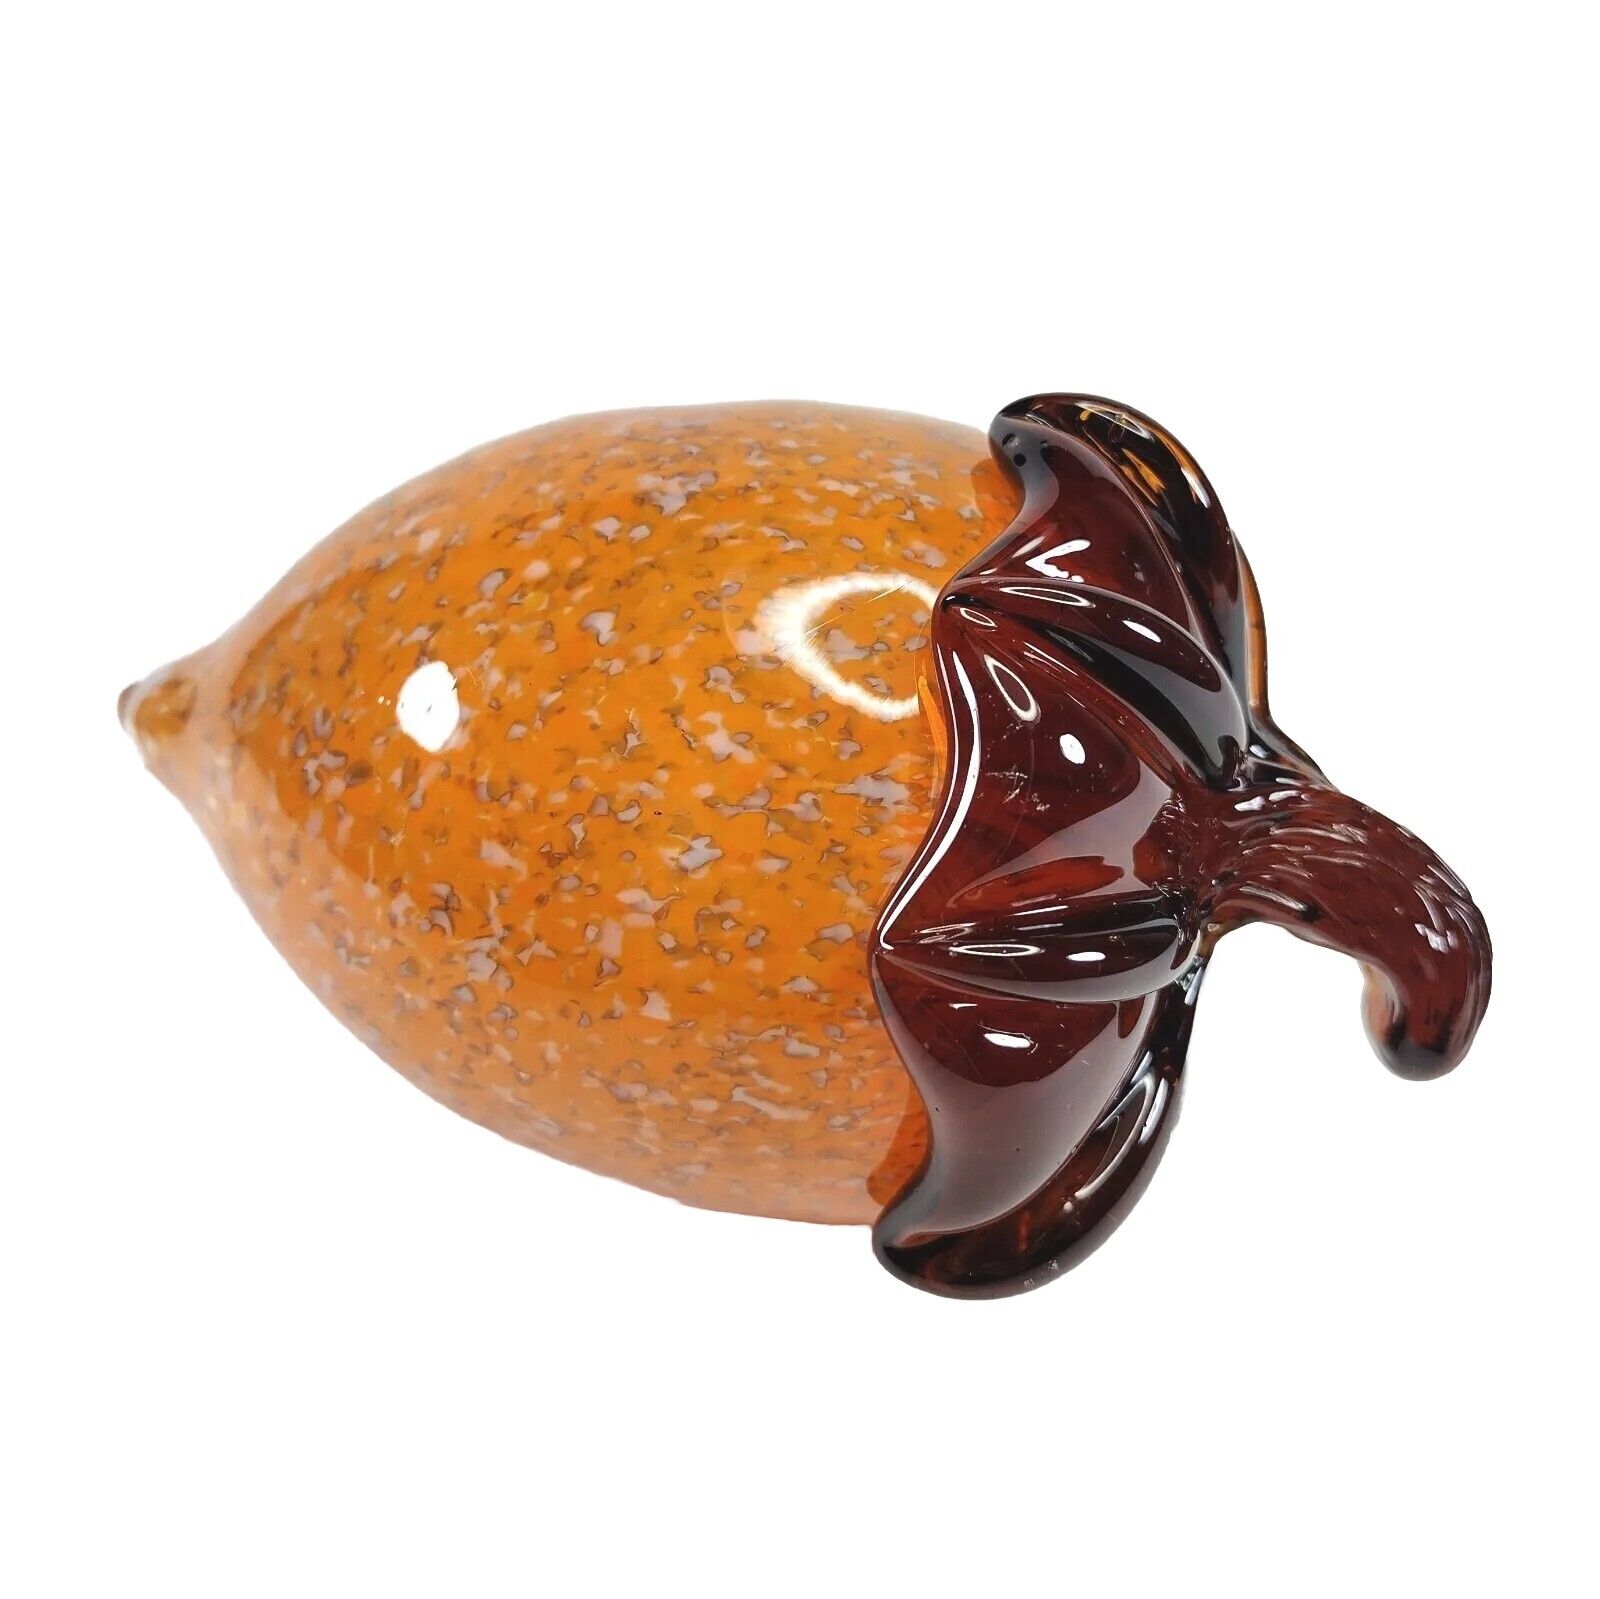 Vtg Pier 1 Imports Art Glass Acorn Fall Home Decor Mottled Orange Amber Stem Nut